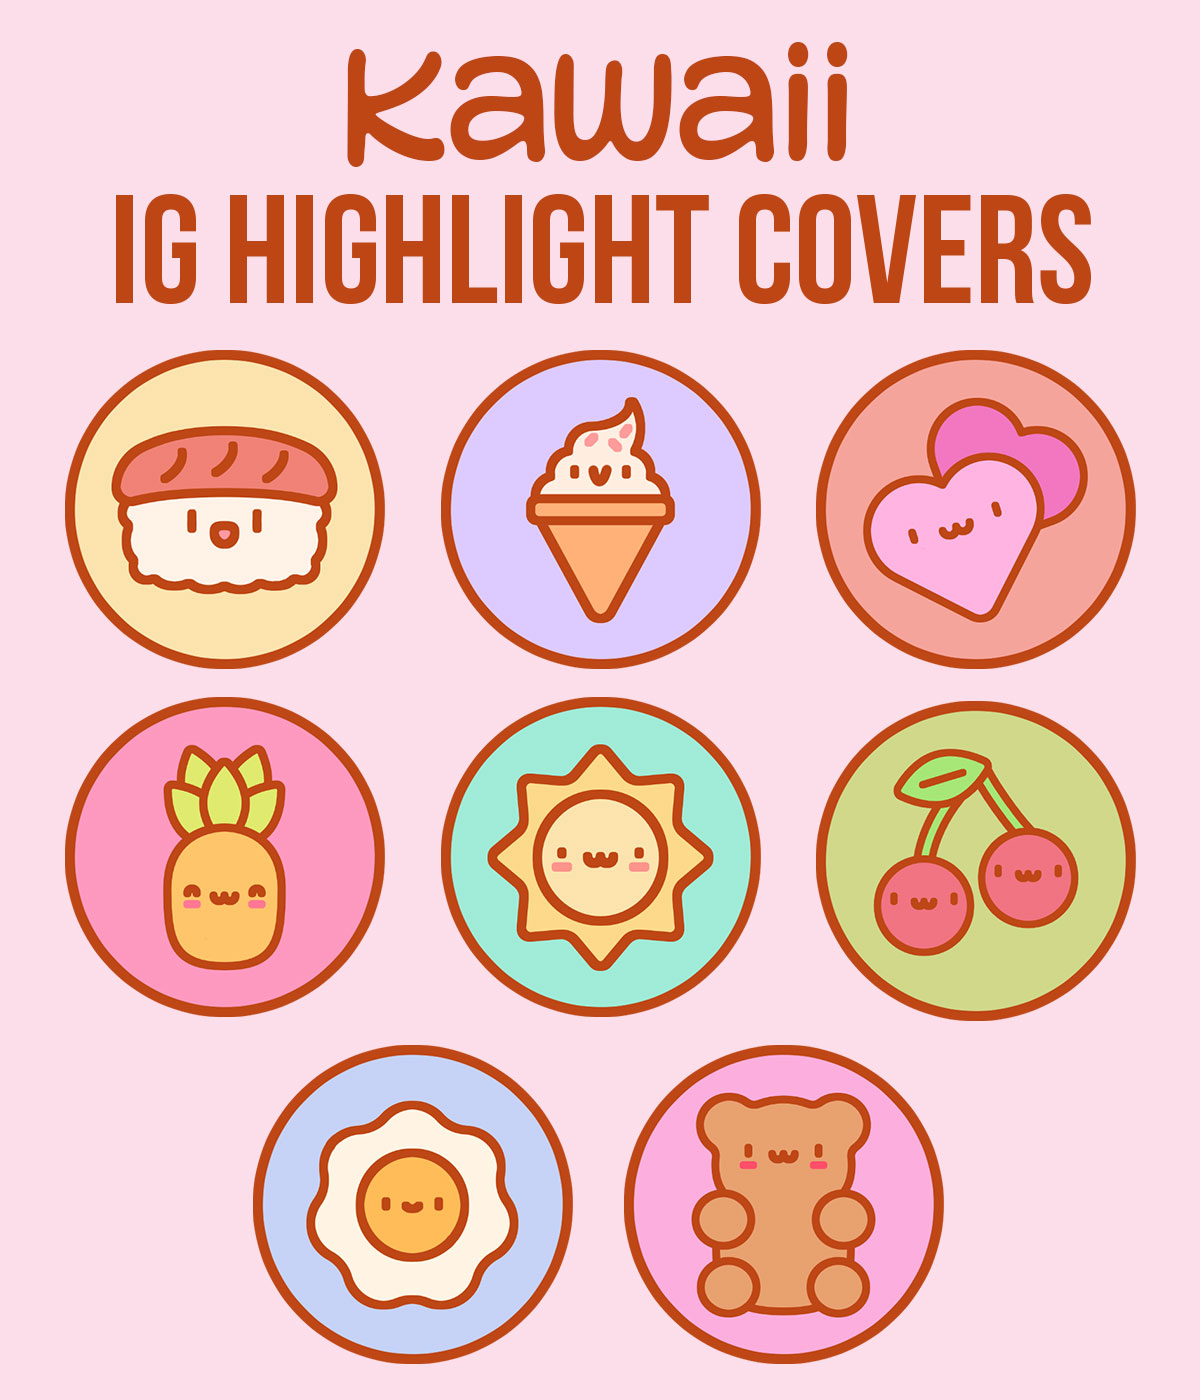 Paquete de portadas kawaii IG Highlight